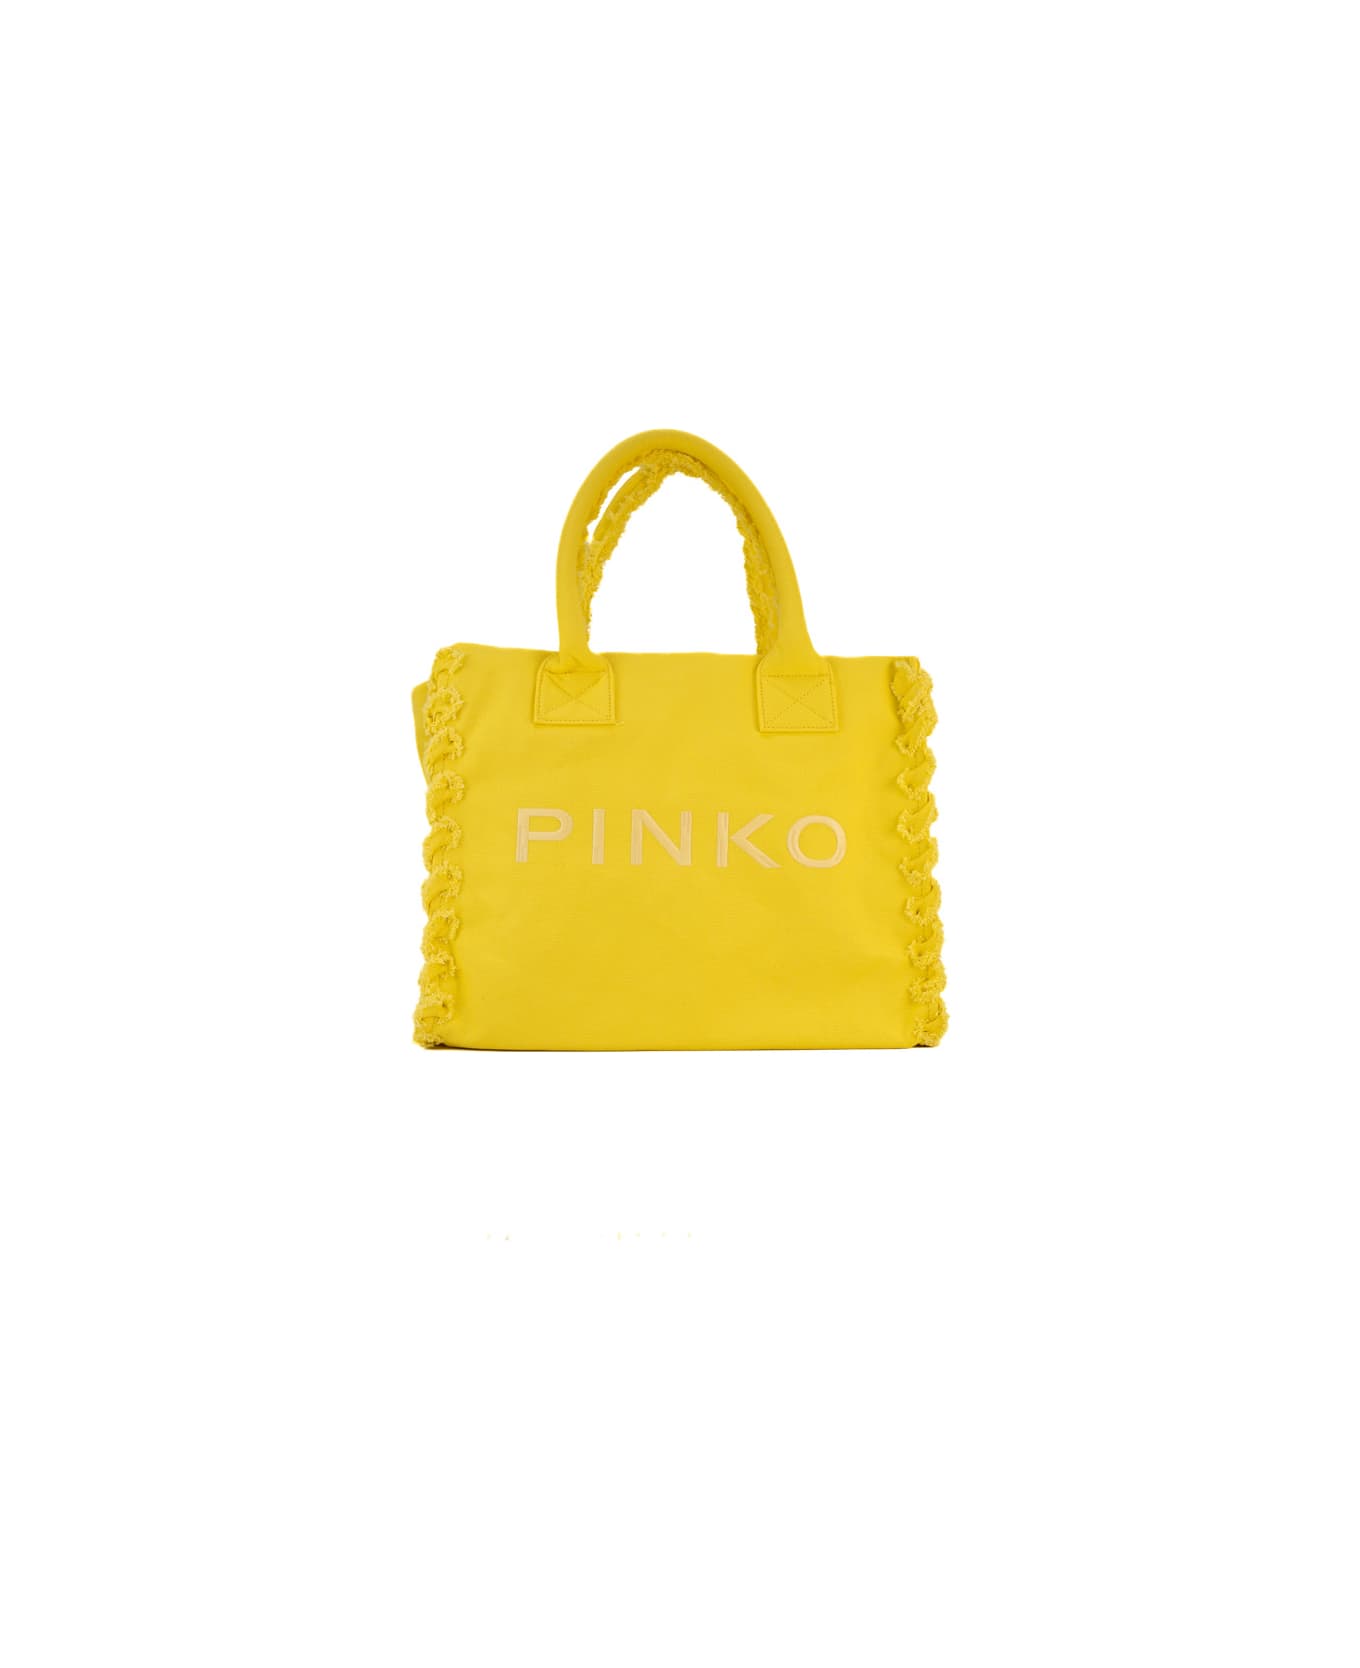 Pinko Canvas Beach Shopper - Giallo sole